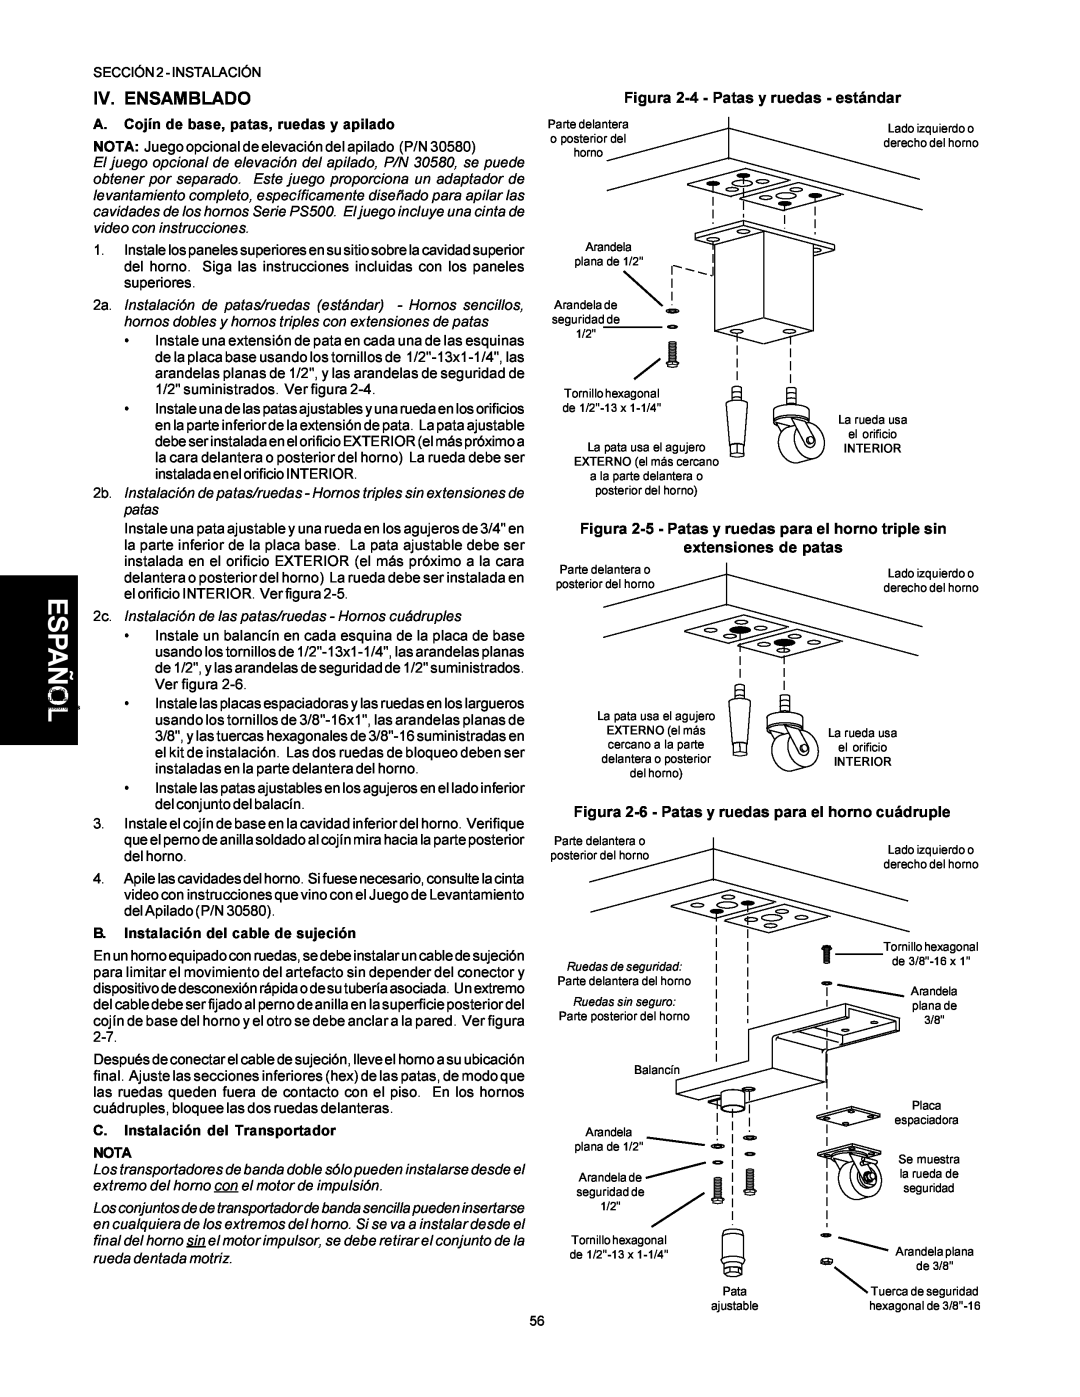 Middleby Marshall PS500 installation manual Iv. Ensamblado, Figura 2-4 - Patas y ruedas - estándar, extensiones de patas 